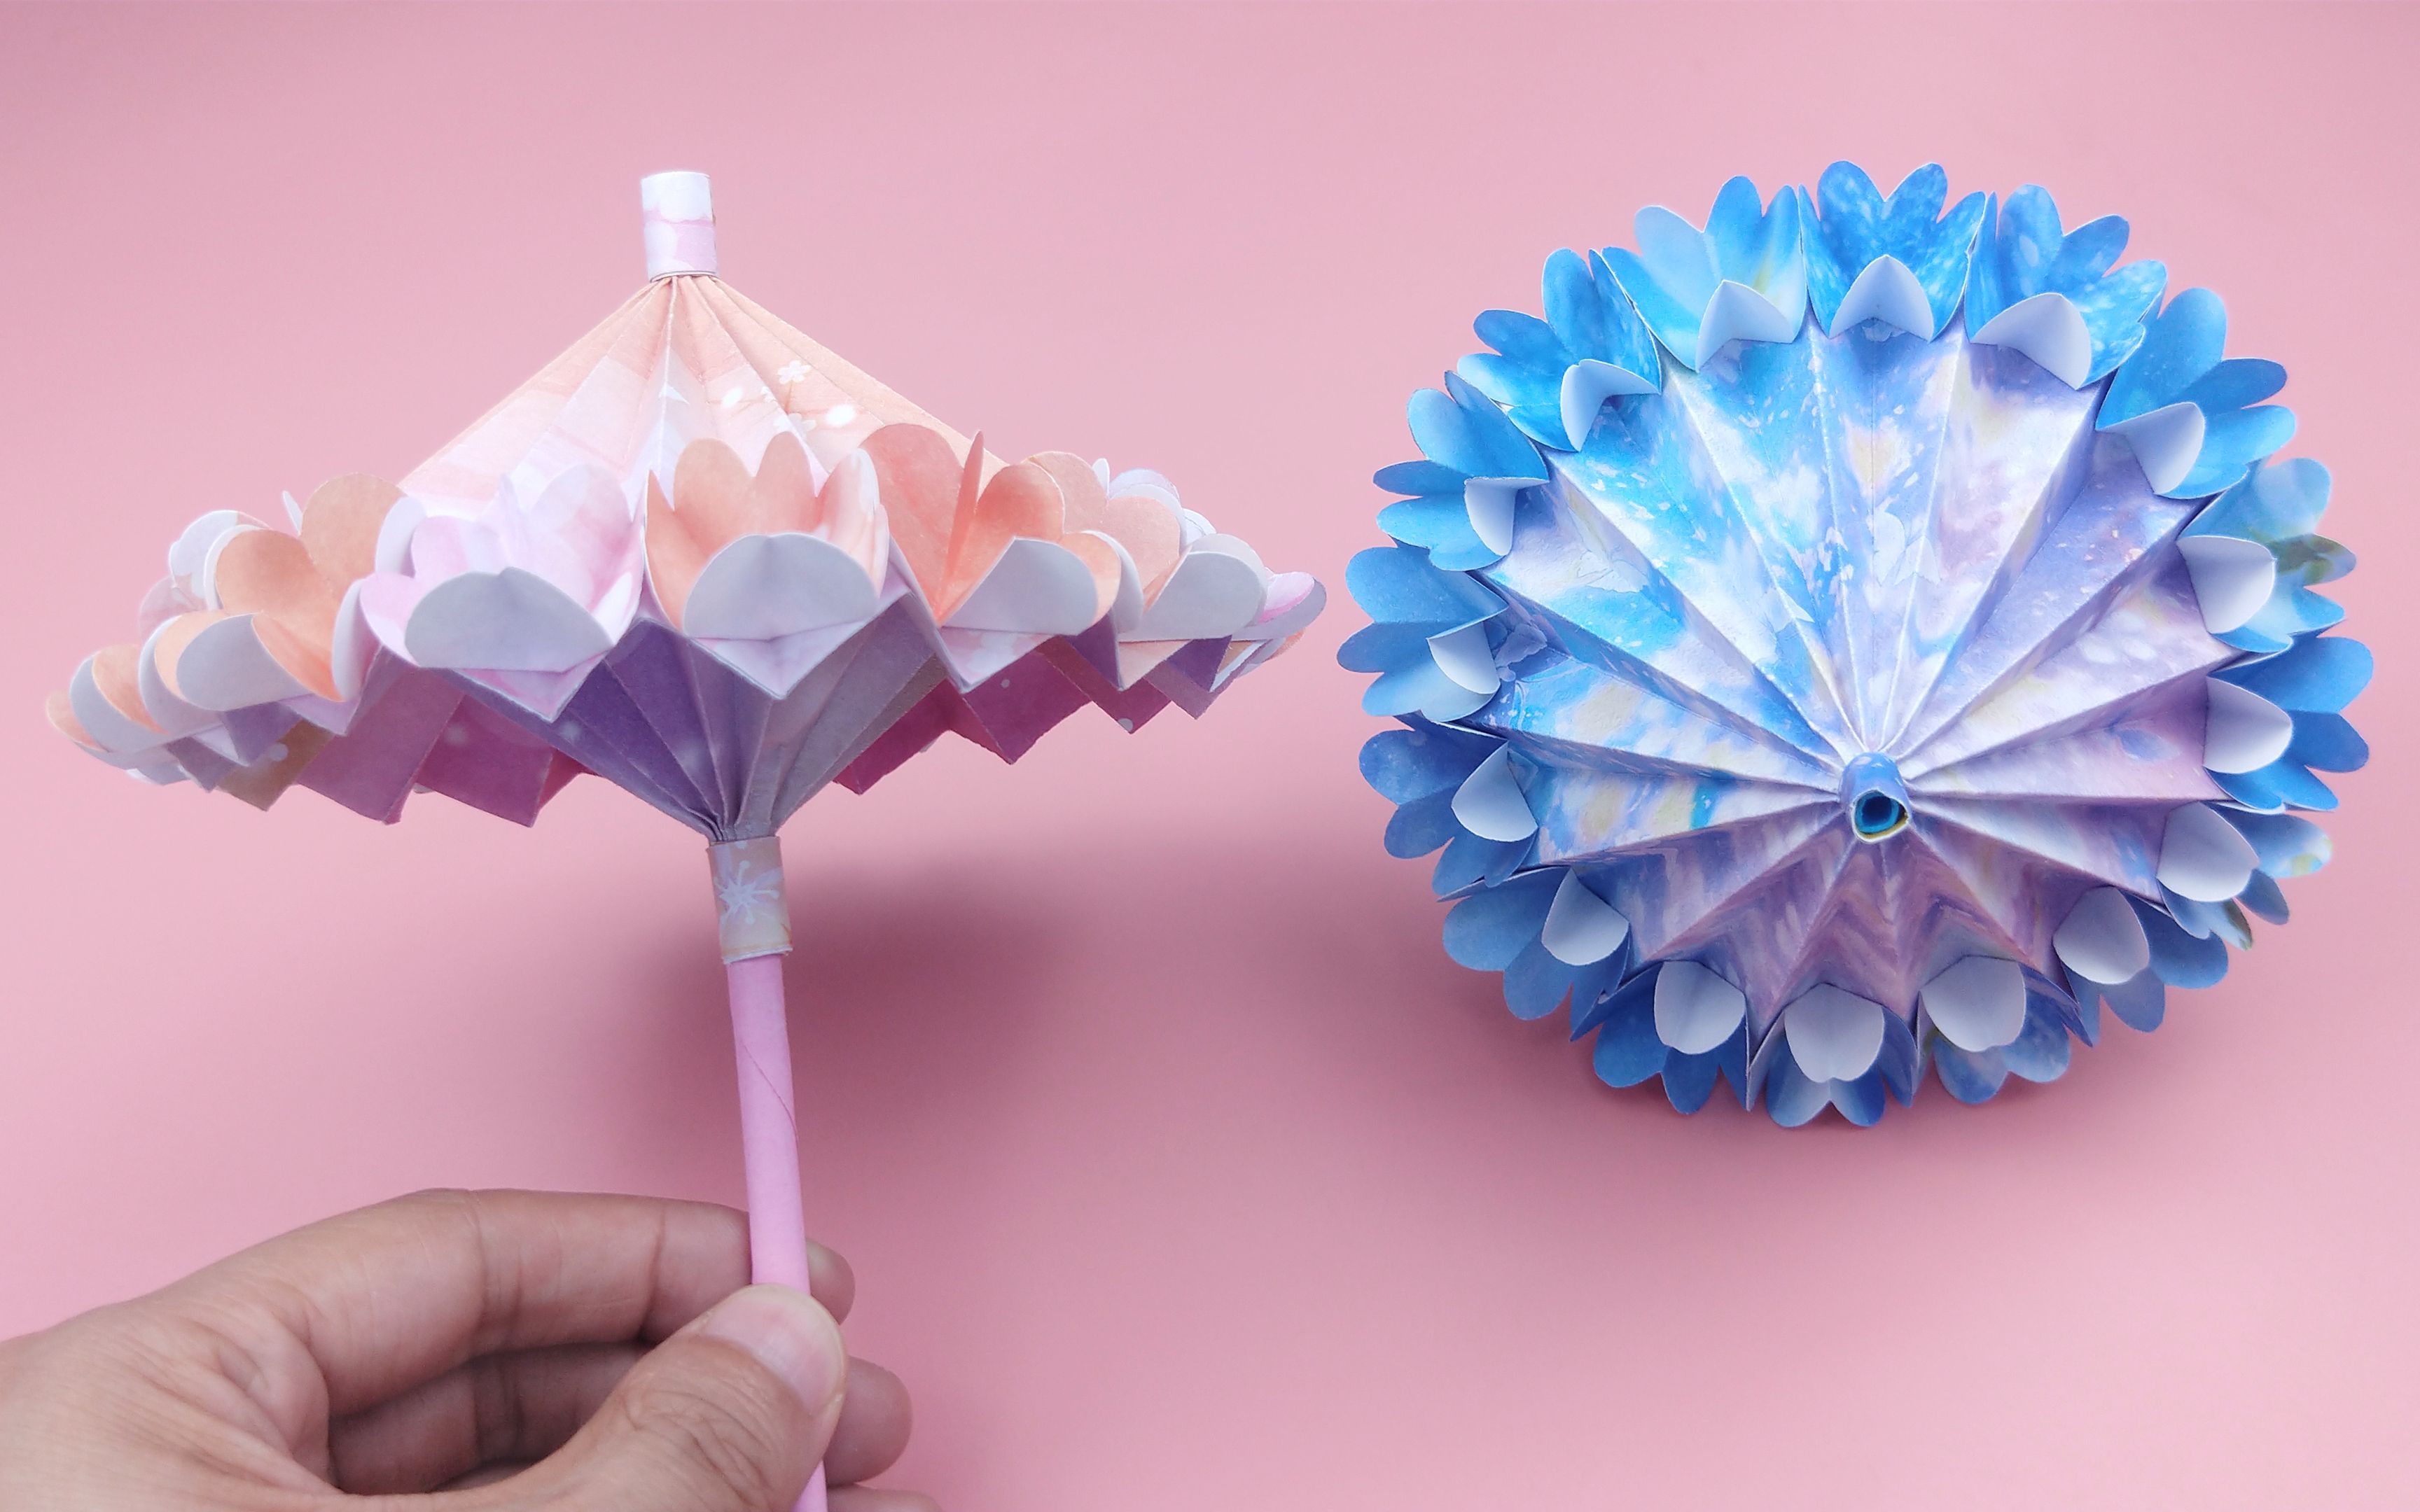 教你折可收缩的立体小花伞,成品非常漂亮,手工diy折纸教程